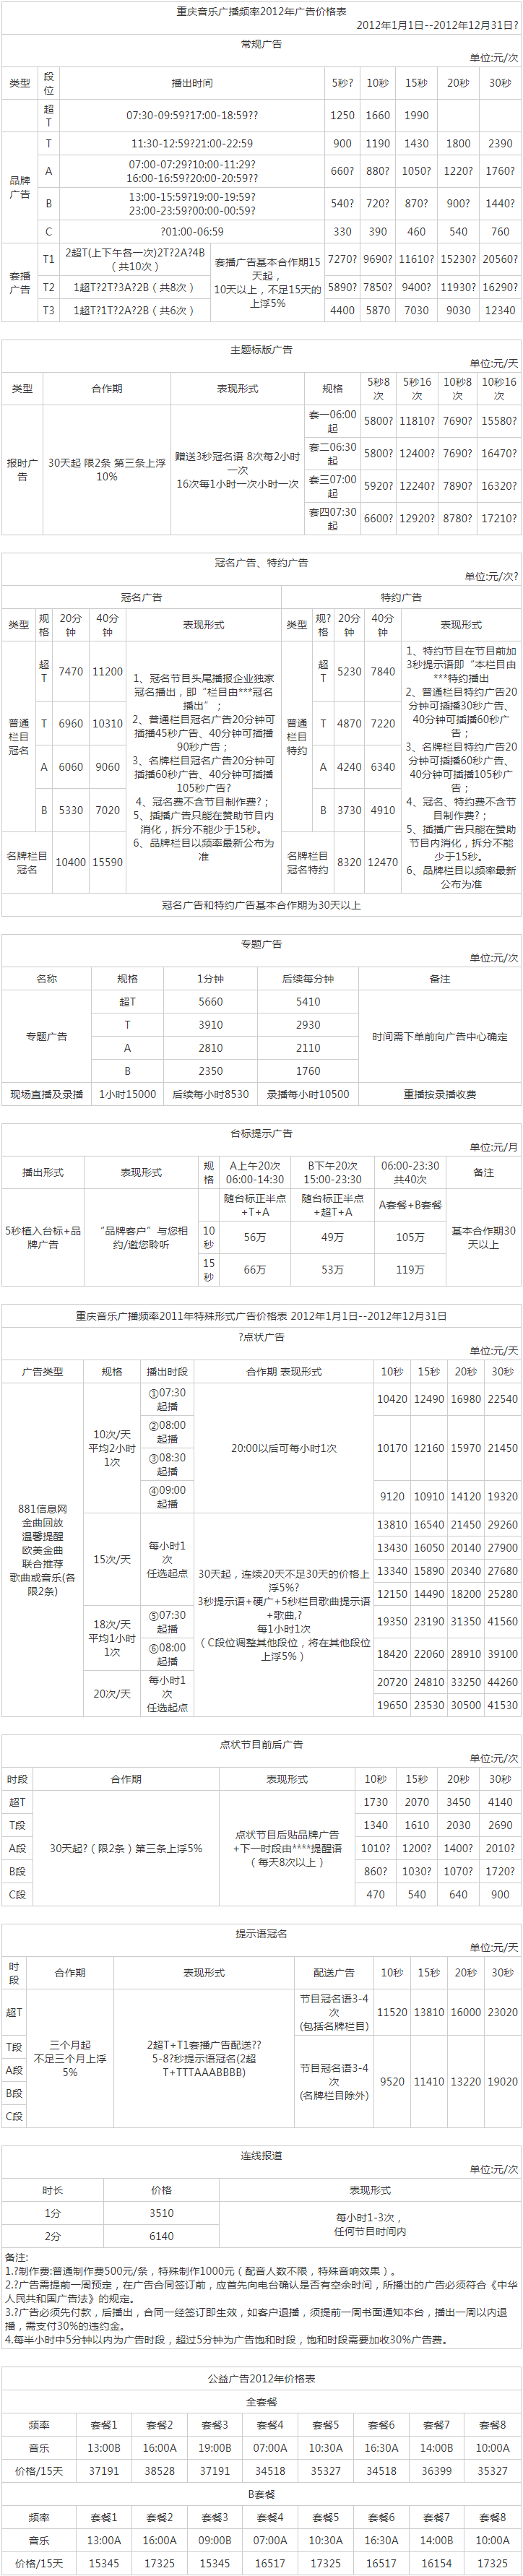 2012重庆人民广播电台音乐频道 FM88.1广告报价表.png